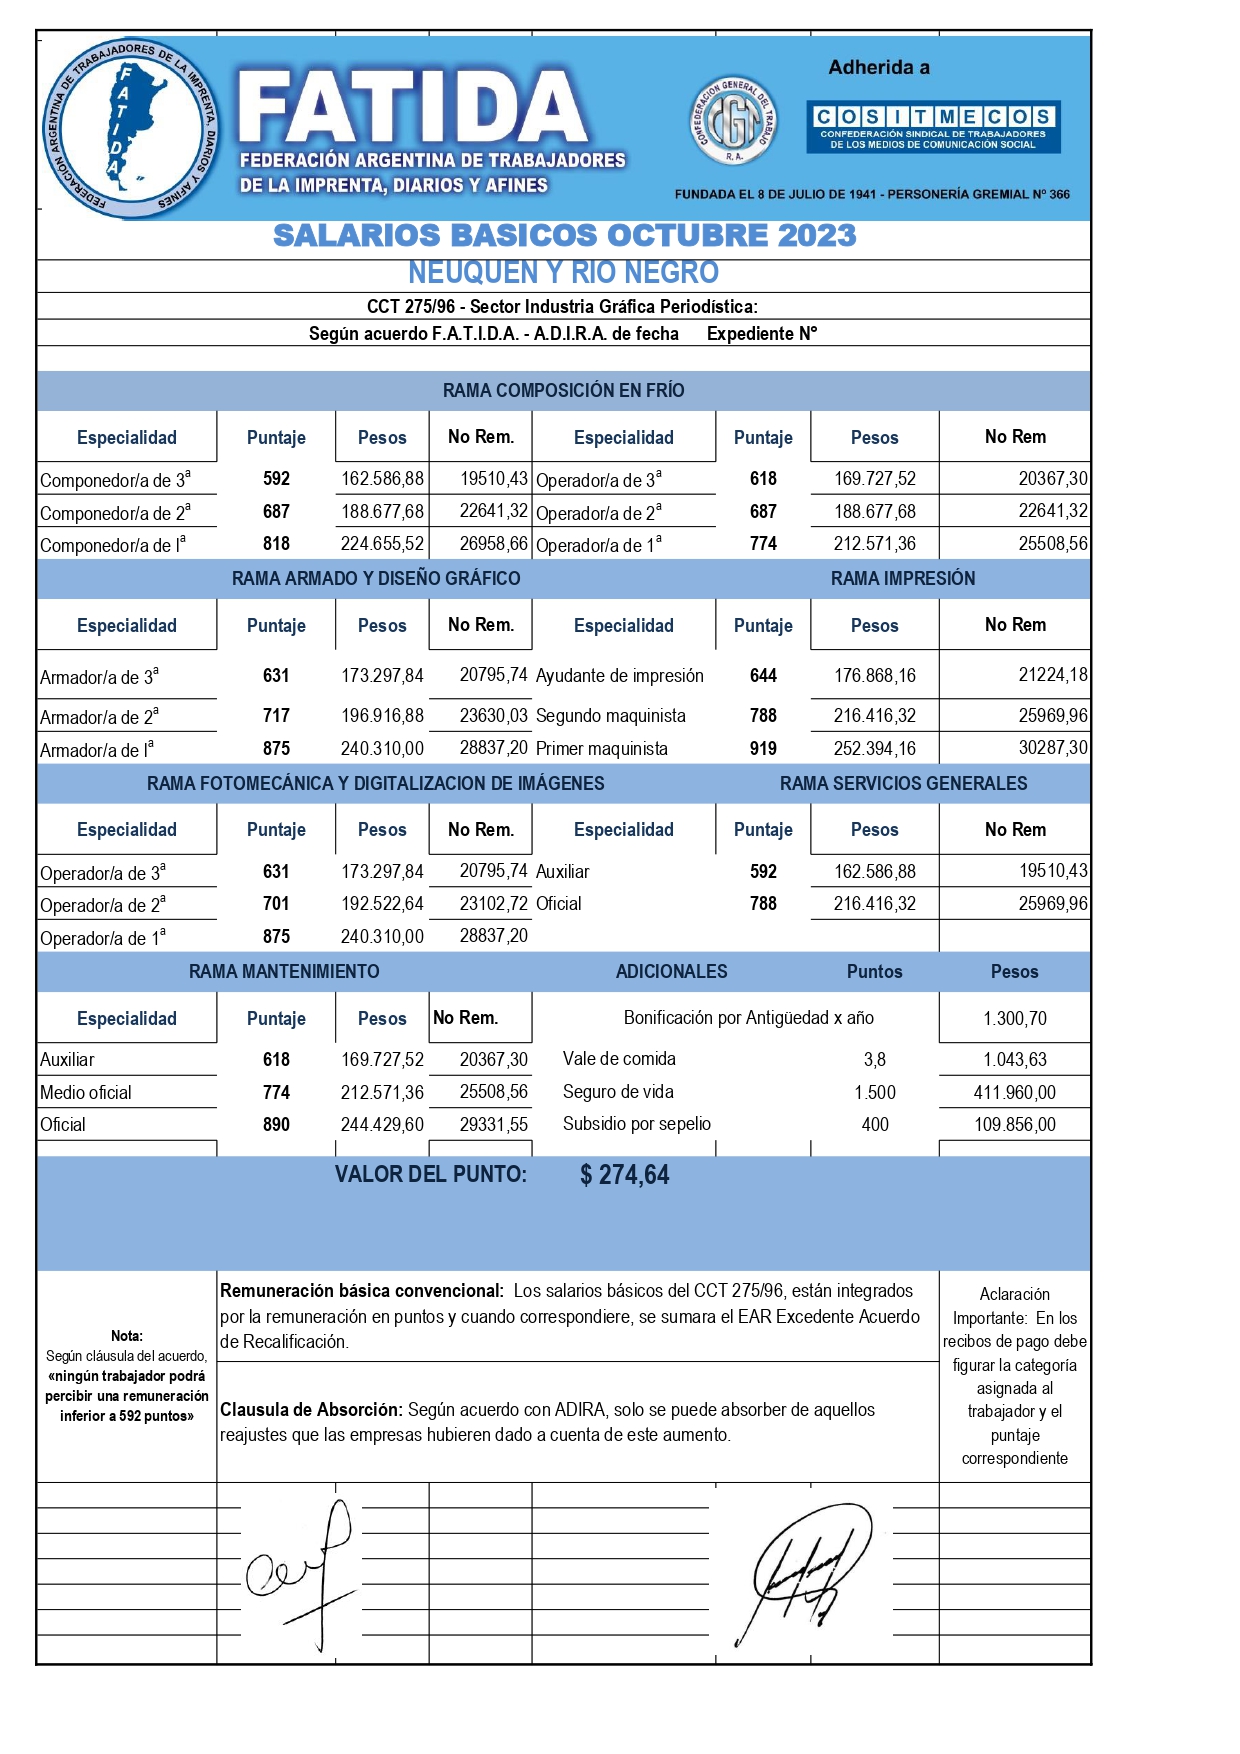 Escala salarial Diarios – Octubre 23 – Neuquén y Río Negro